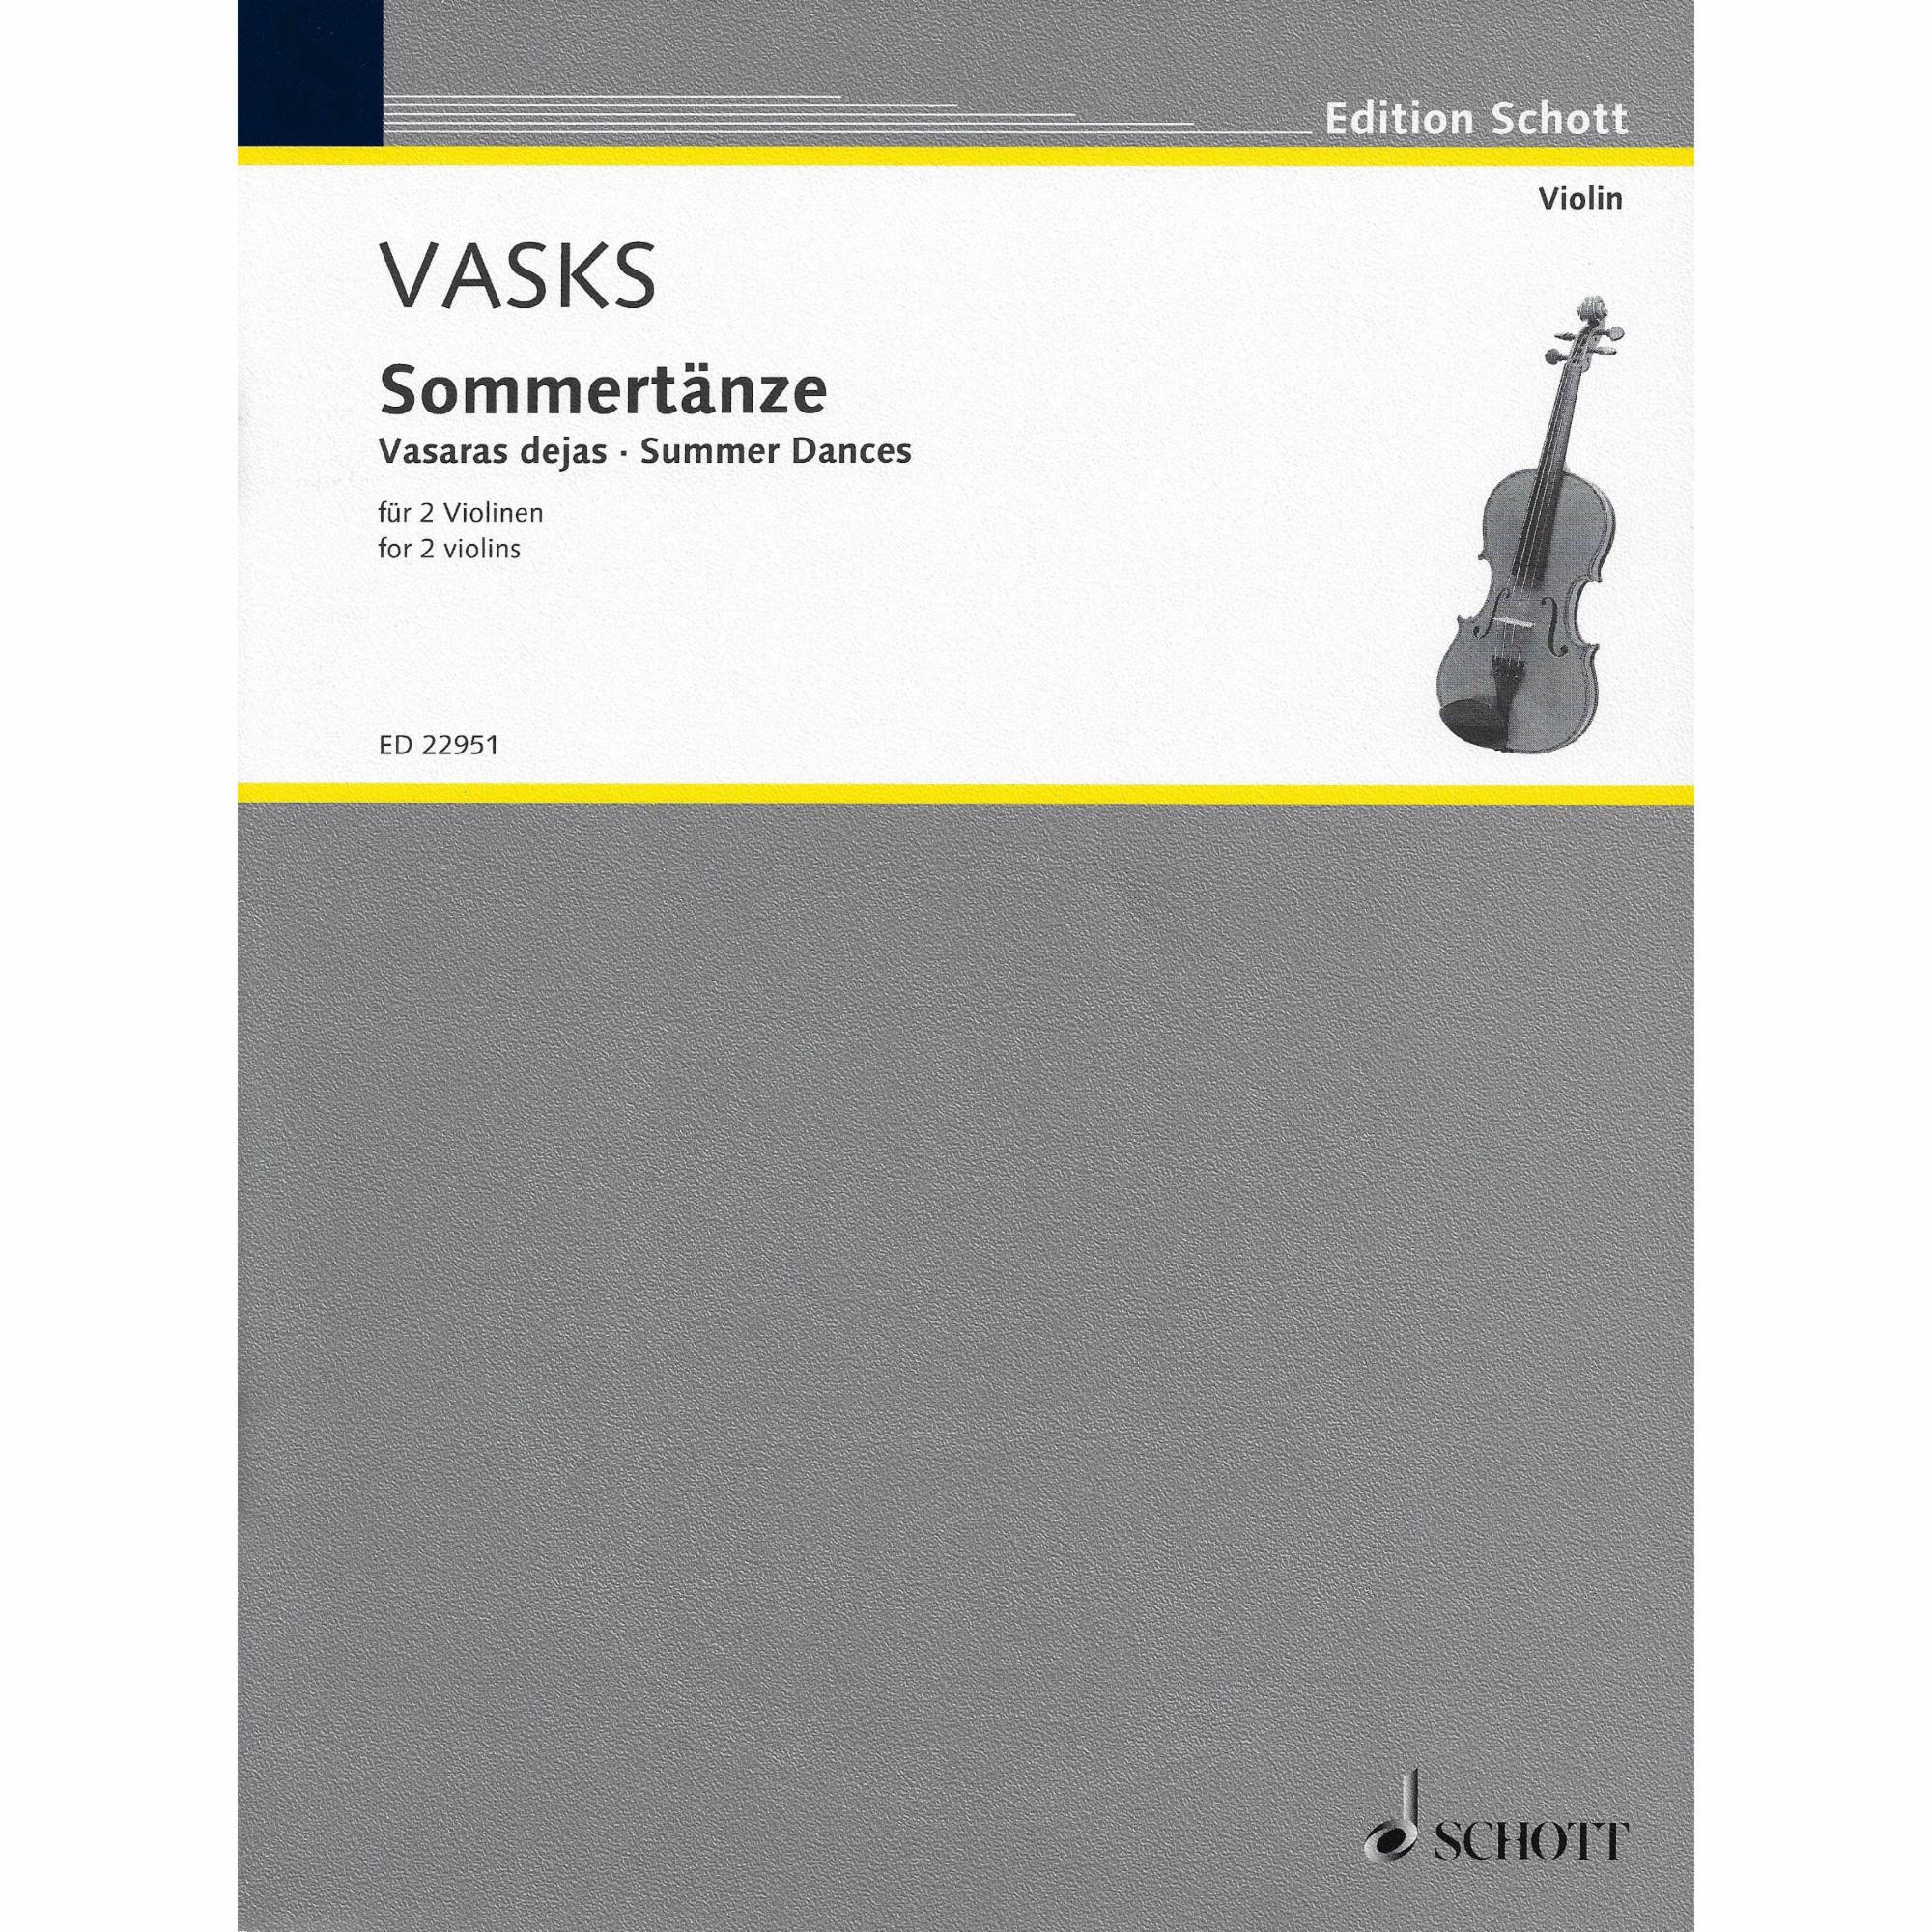 Vasks -- Summer Dances for Two Violins